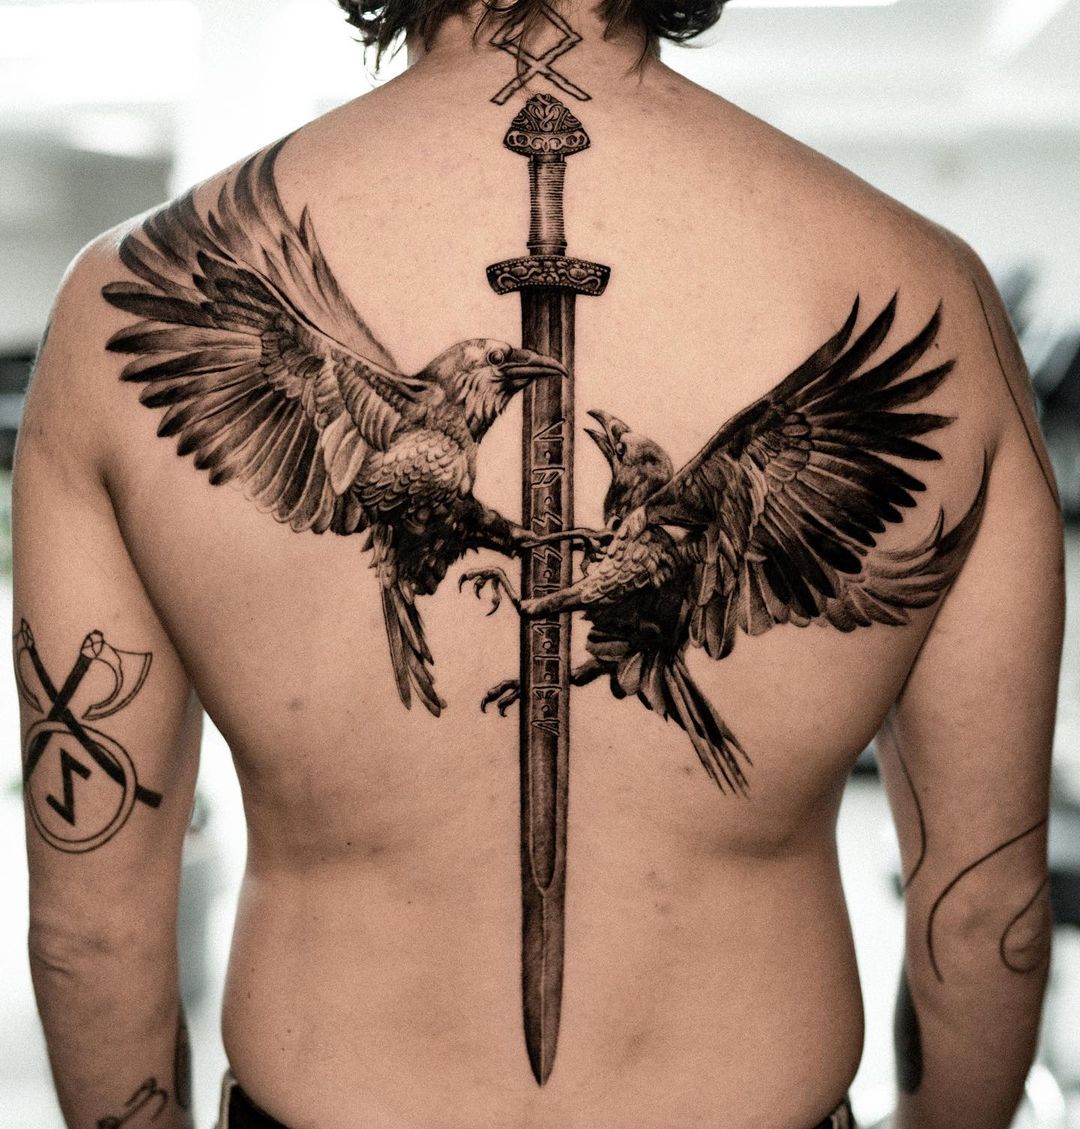 Black and grey bird tattoo by klimentyv